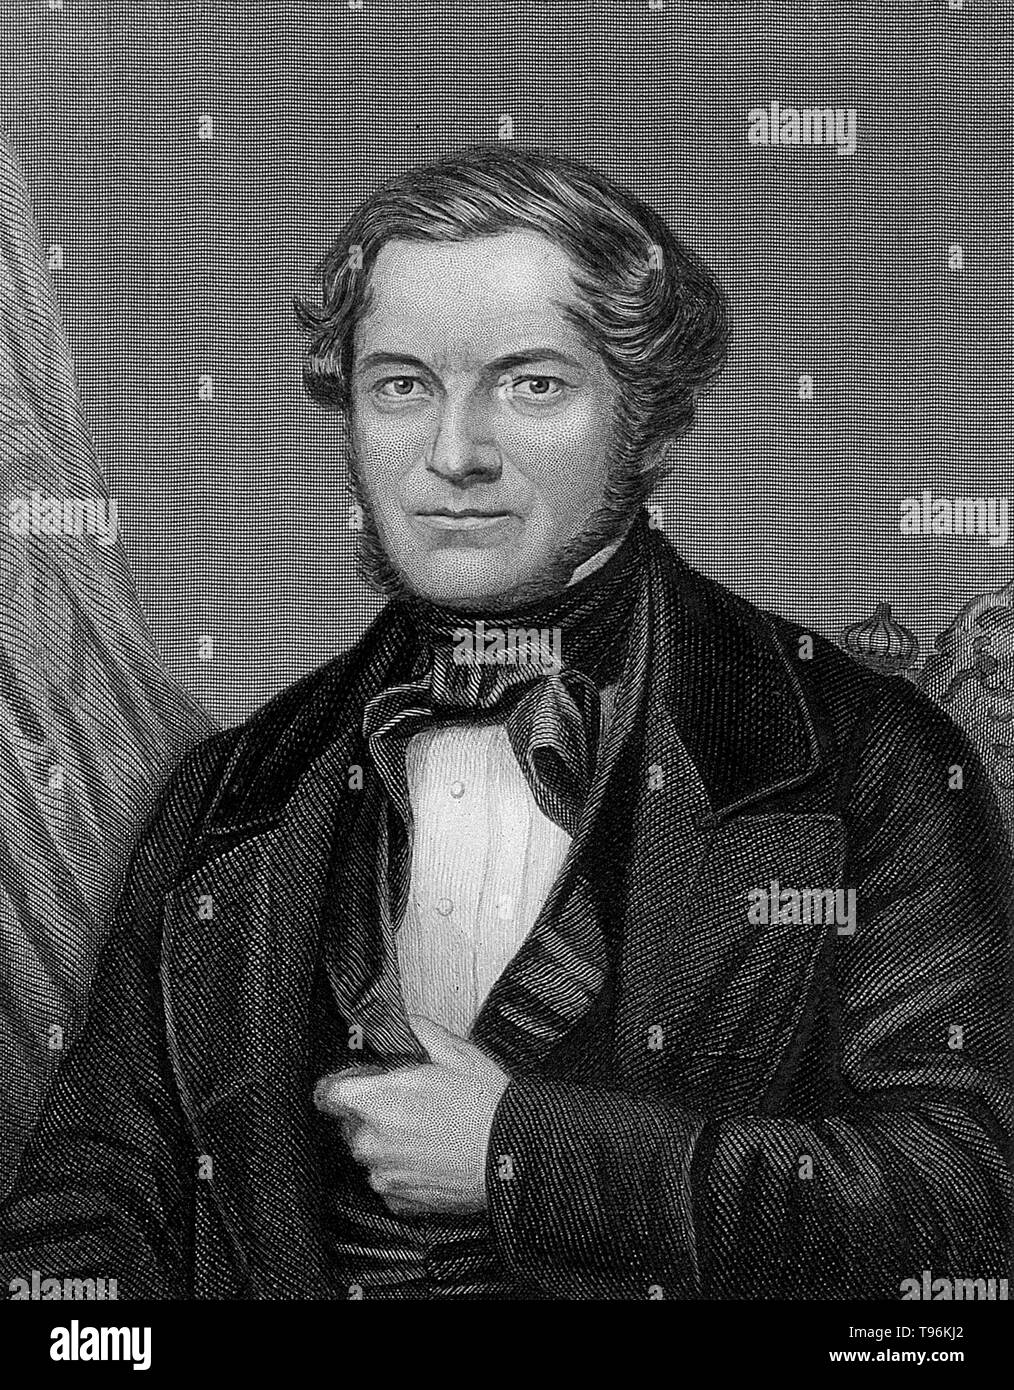 Robert Wilhelm Bunsen Eberhard (30 mars 1811 - 16 Augus, 1899) est un chimiste allemand. Il enquête sur les éléments chauffants de spectres d'émission, et a découvert le césium (en 1860) et de rubidium (en 1861) avec le physicien Gustav Kirchhoff. Bunsen mis au point plusieurs méthodes d'analyse de gaz, a été un pionnier de la photochimie, et n premiers travaux dans le domaine de l'organoarsenic la chimie. Banque D'Images